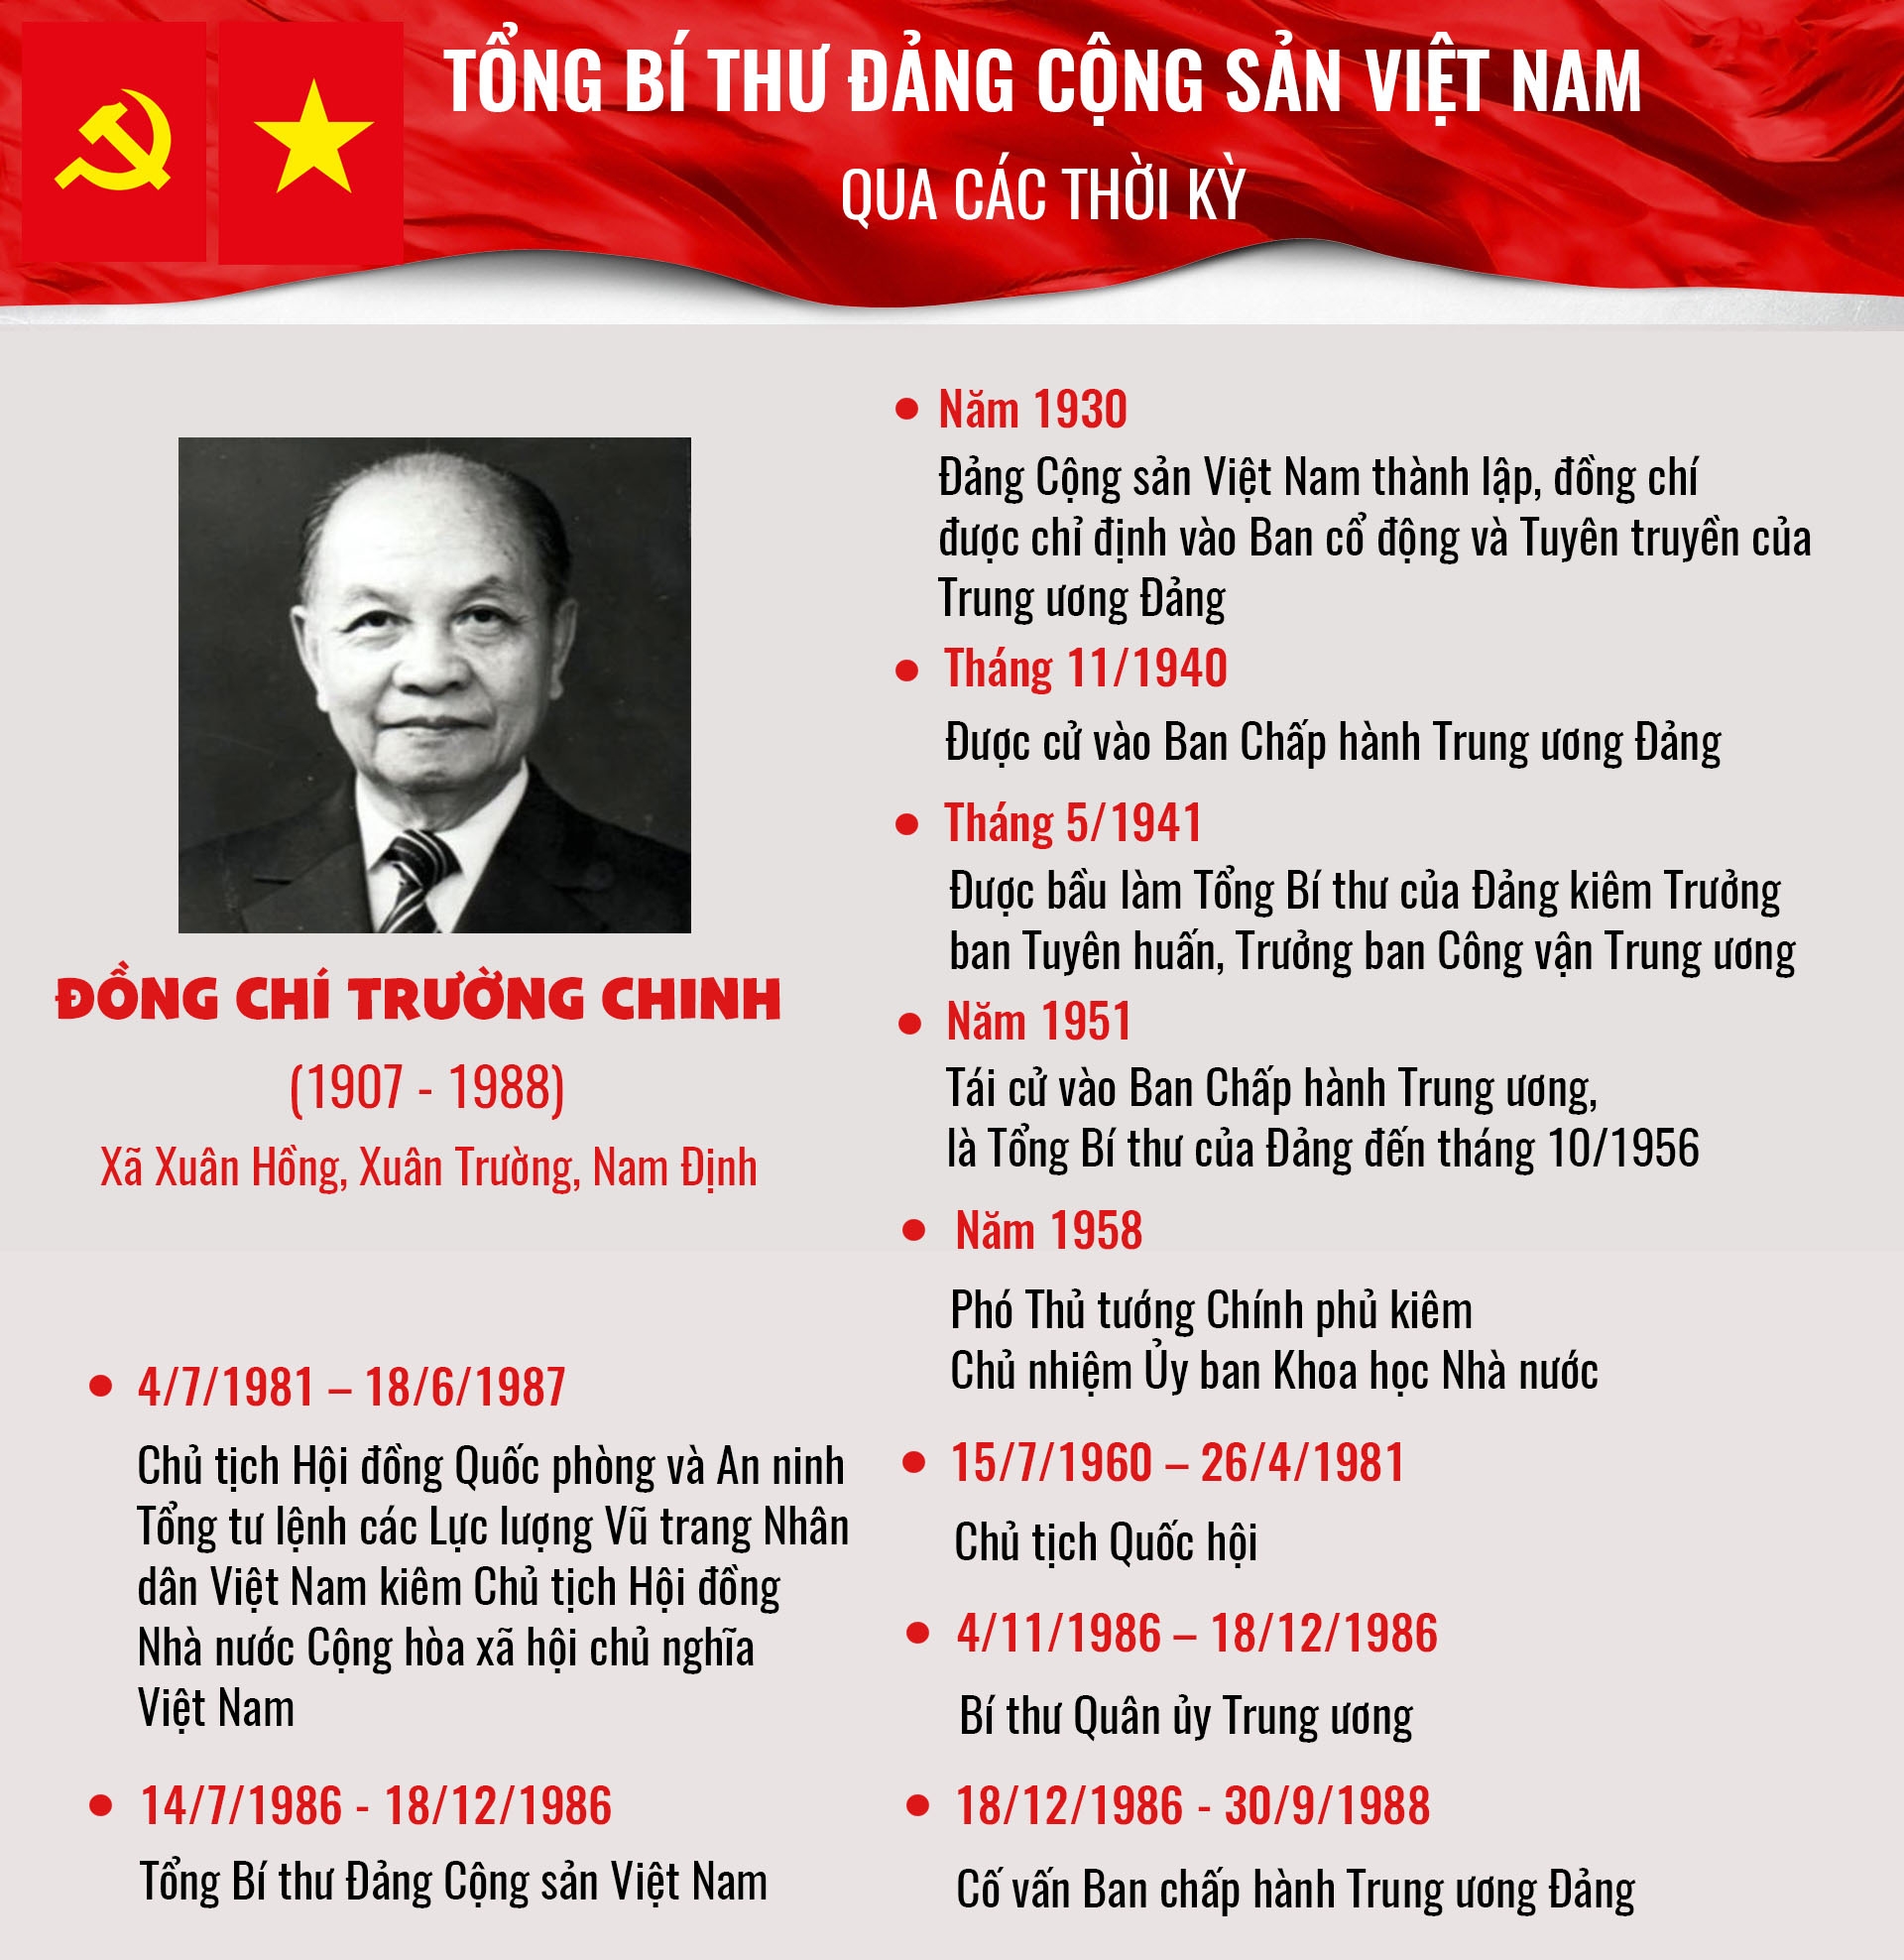 Bí thư: Với sự lãnh đạo của các bí thư địa phương, Việt Nam đang trở thành một trong những đất nước phát triển nhất khu vực. Hãy xem hình ảnh về bí thư để thấy sự quyết tâm và nỗ lực của các nhà lãnh đạo địa phương trong việc đưa đất nước Việt Nam vươn lên.